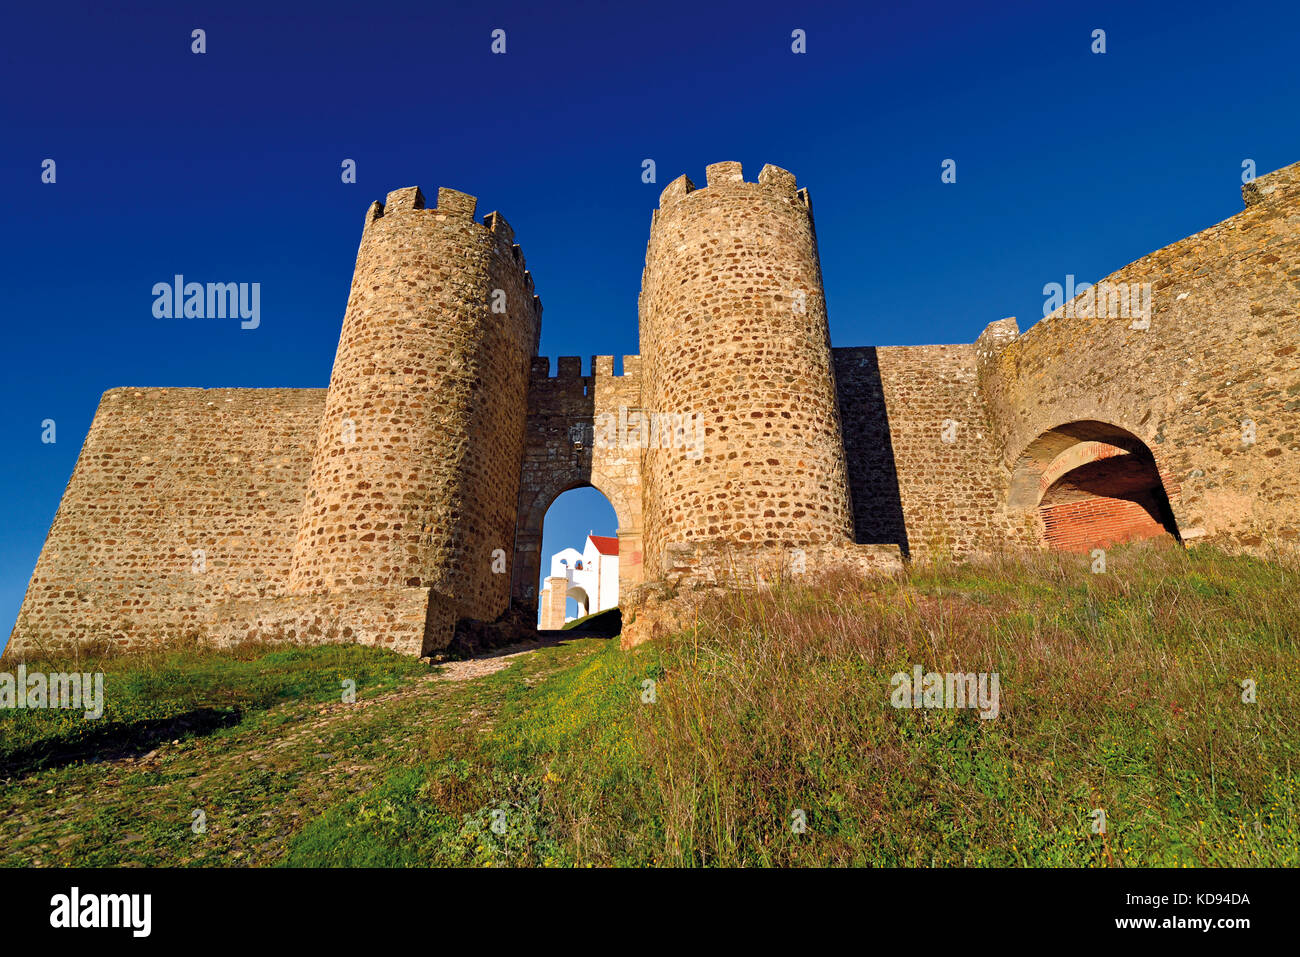 Portugal: Mittelalterliche Burgmauer von Evoramonte Stockfoto